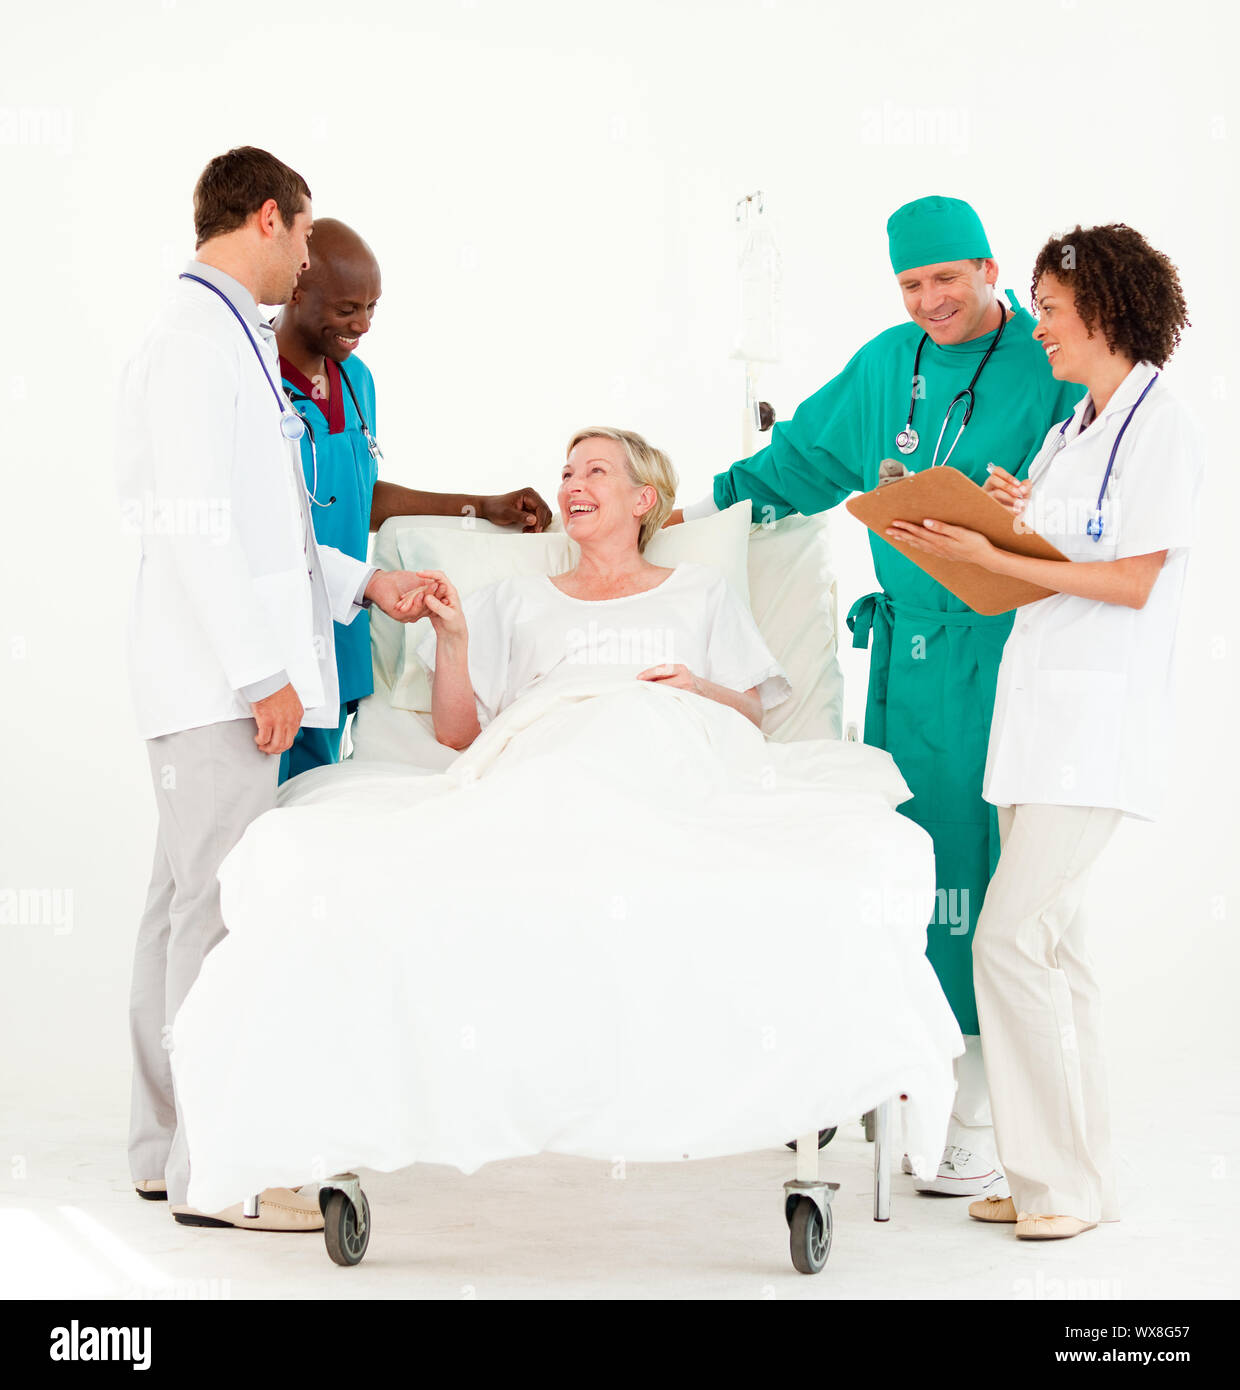 Los médicos examinan un paciente enfermo Foto de stock